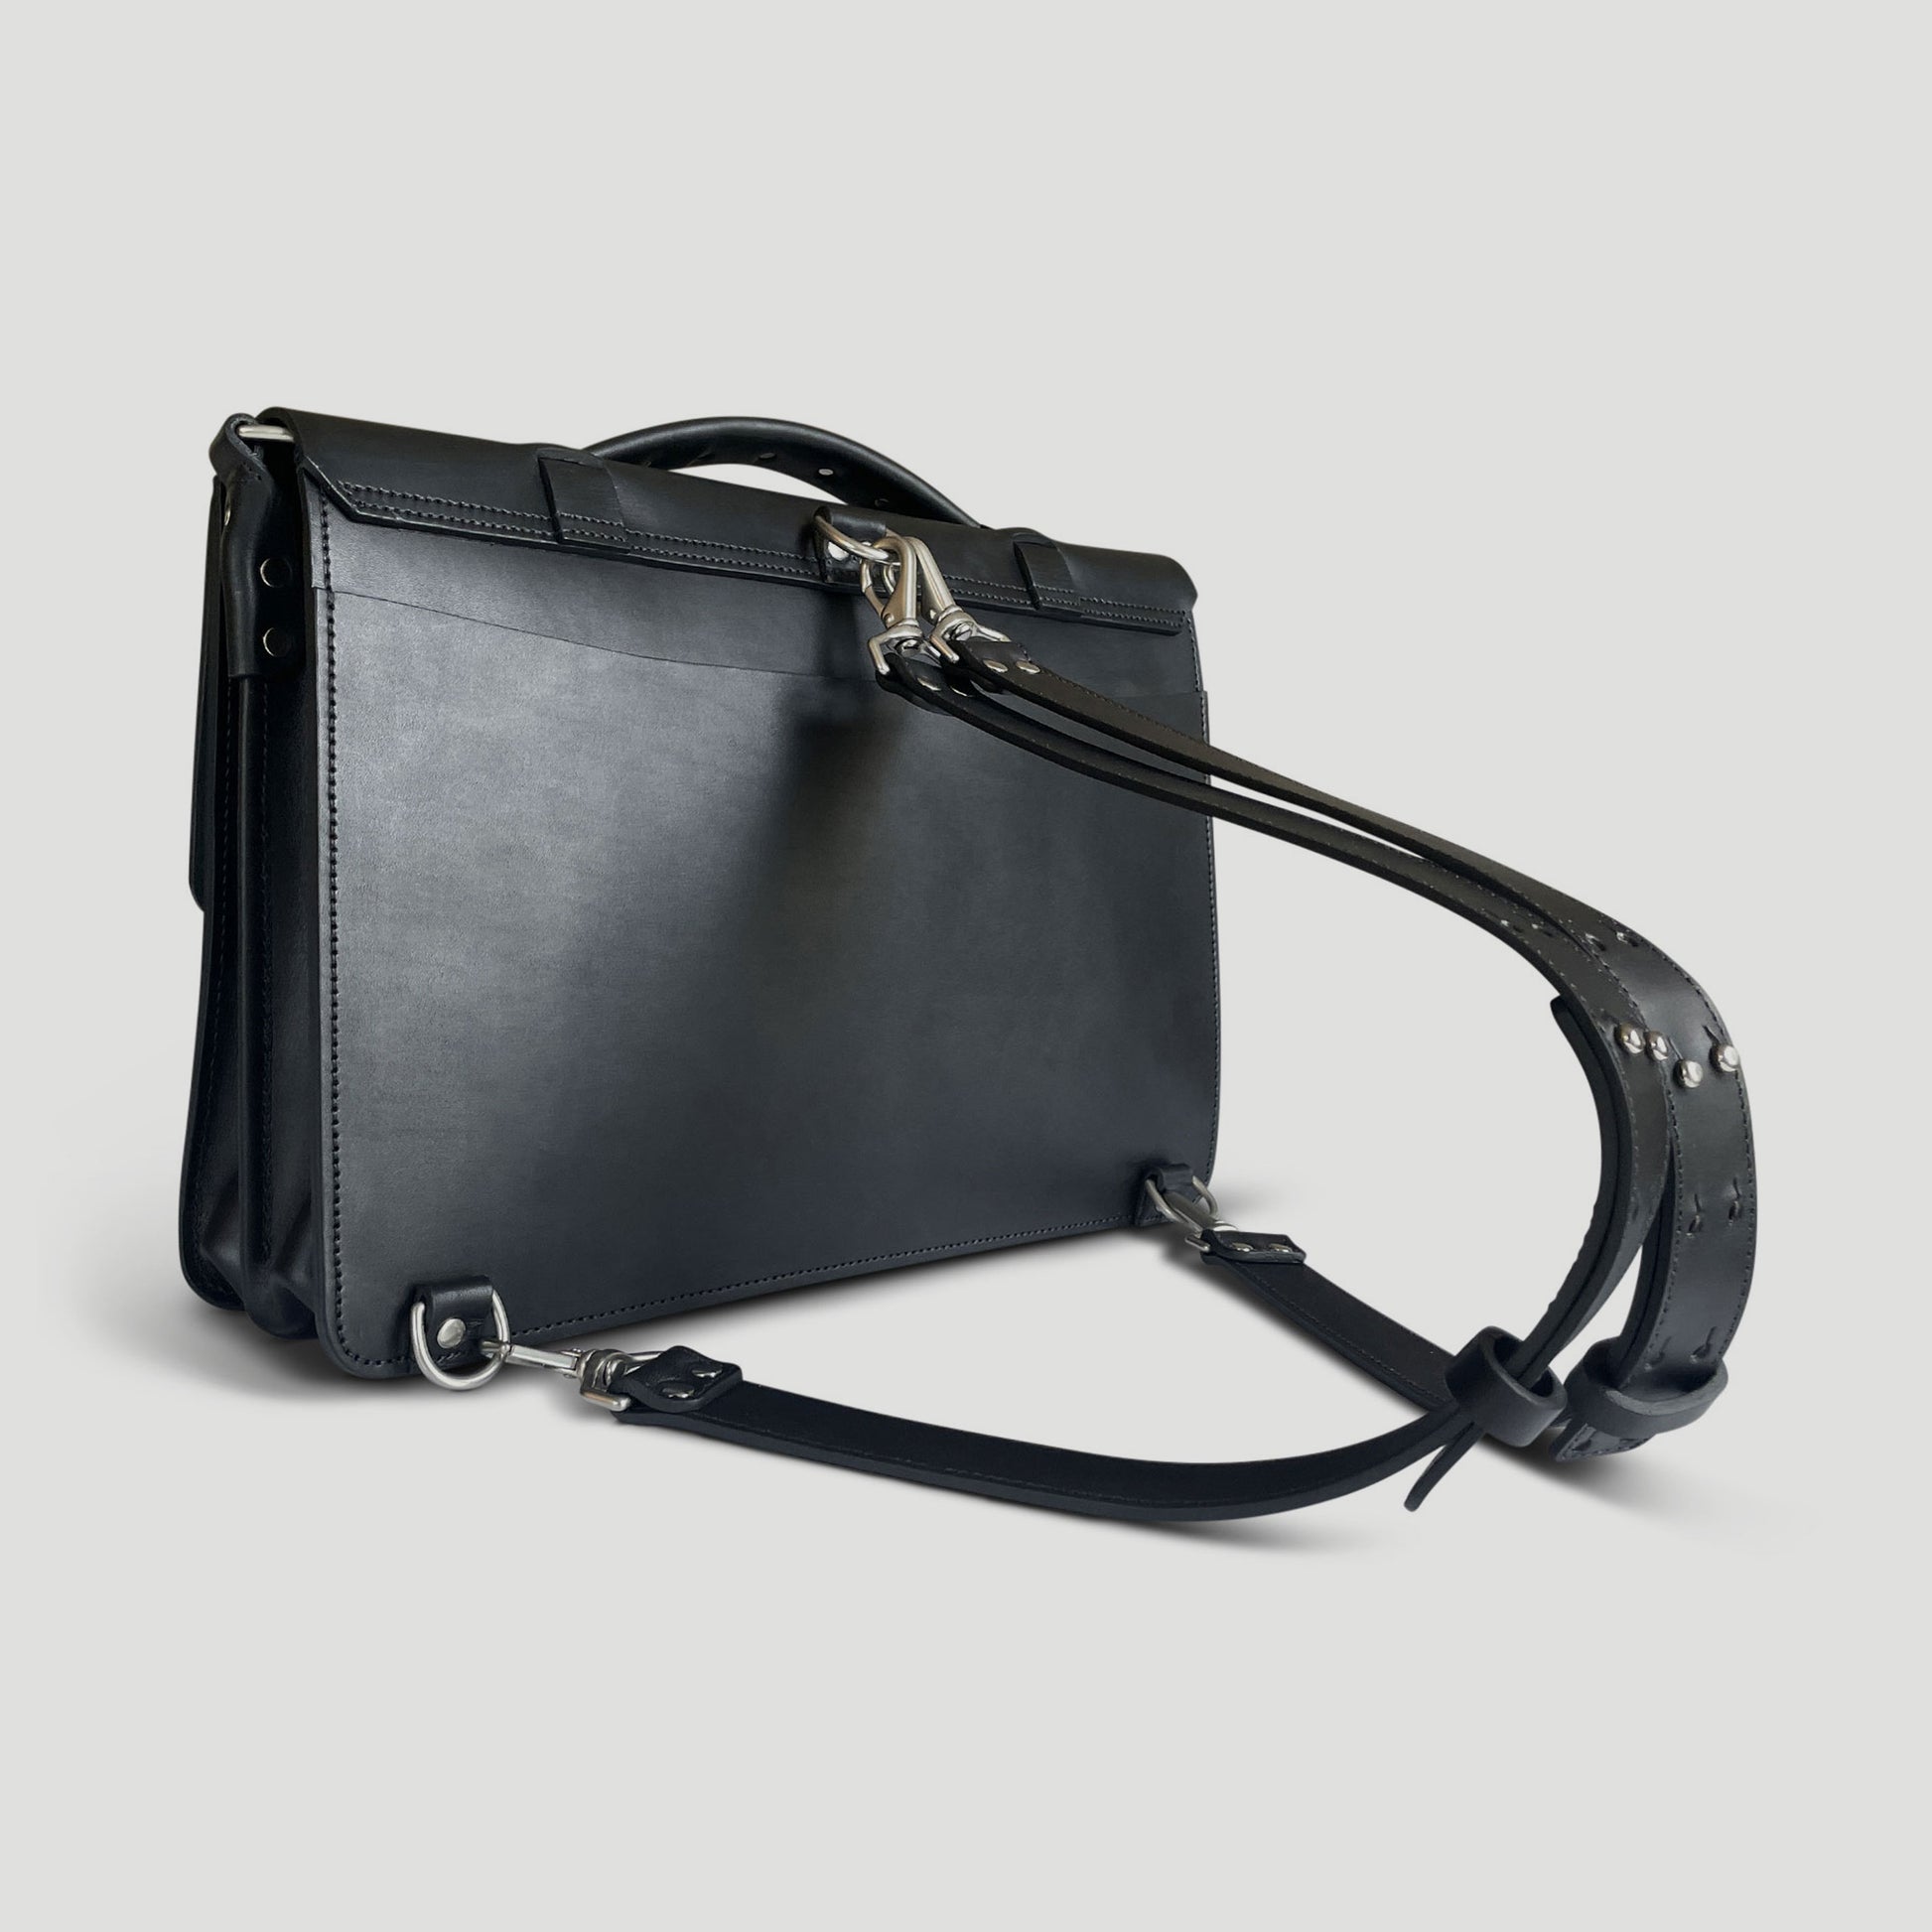 Leather Backpack Straps for Messenger Bag Black - Linden Is Enough